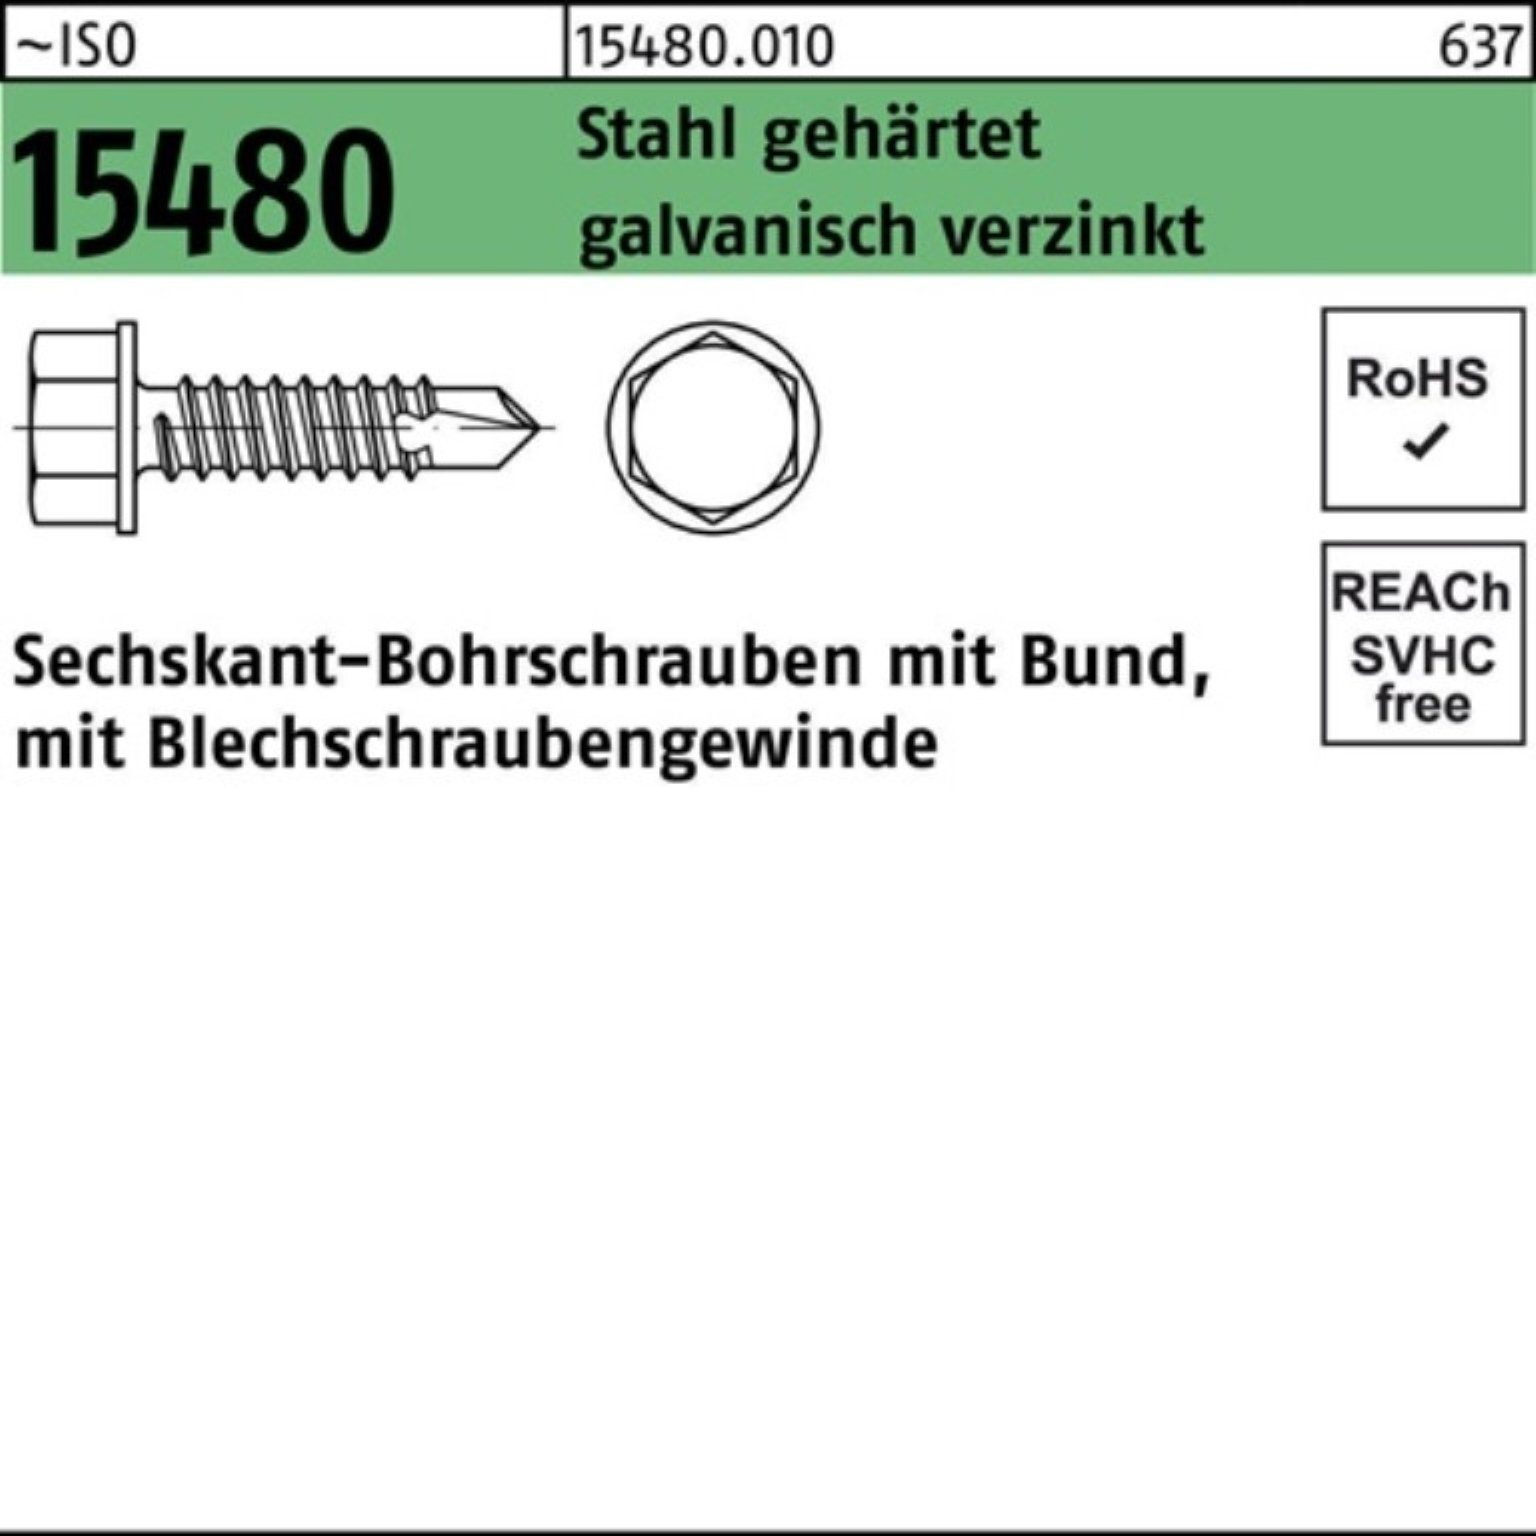 Reyher Bohrschraube 1000er gehä 3,9x32 Bund 15480 Stahl Pack ST Sechskantbohrschraube ISO